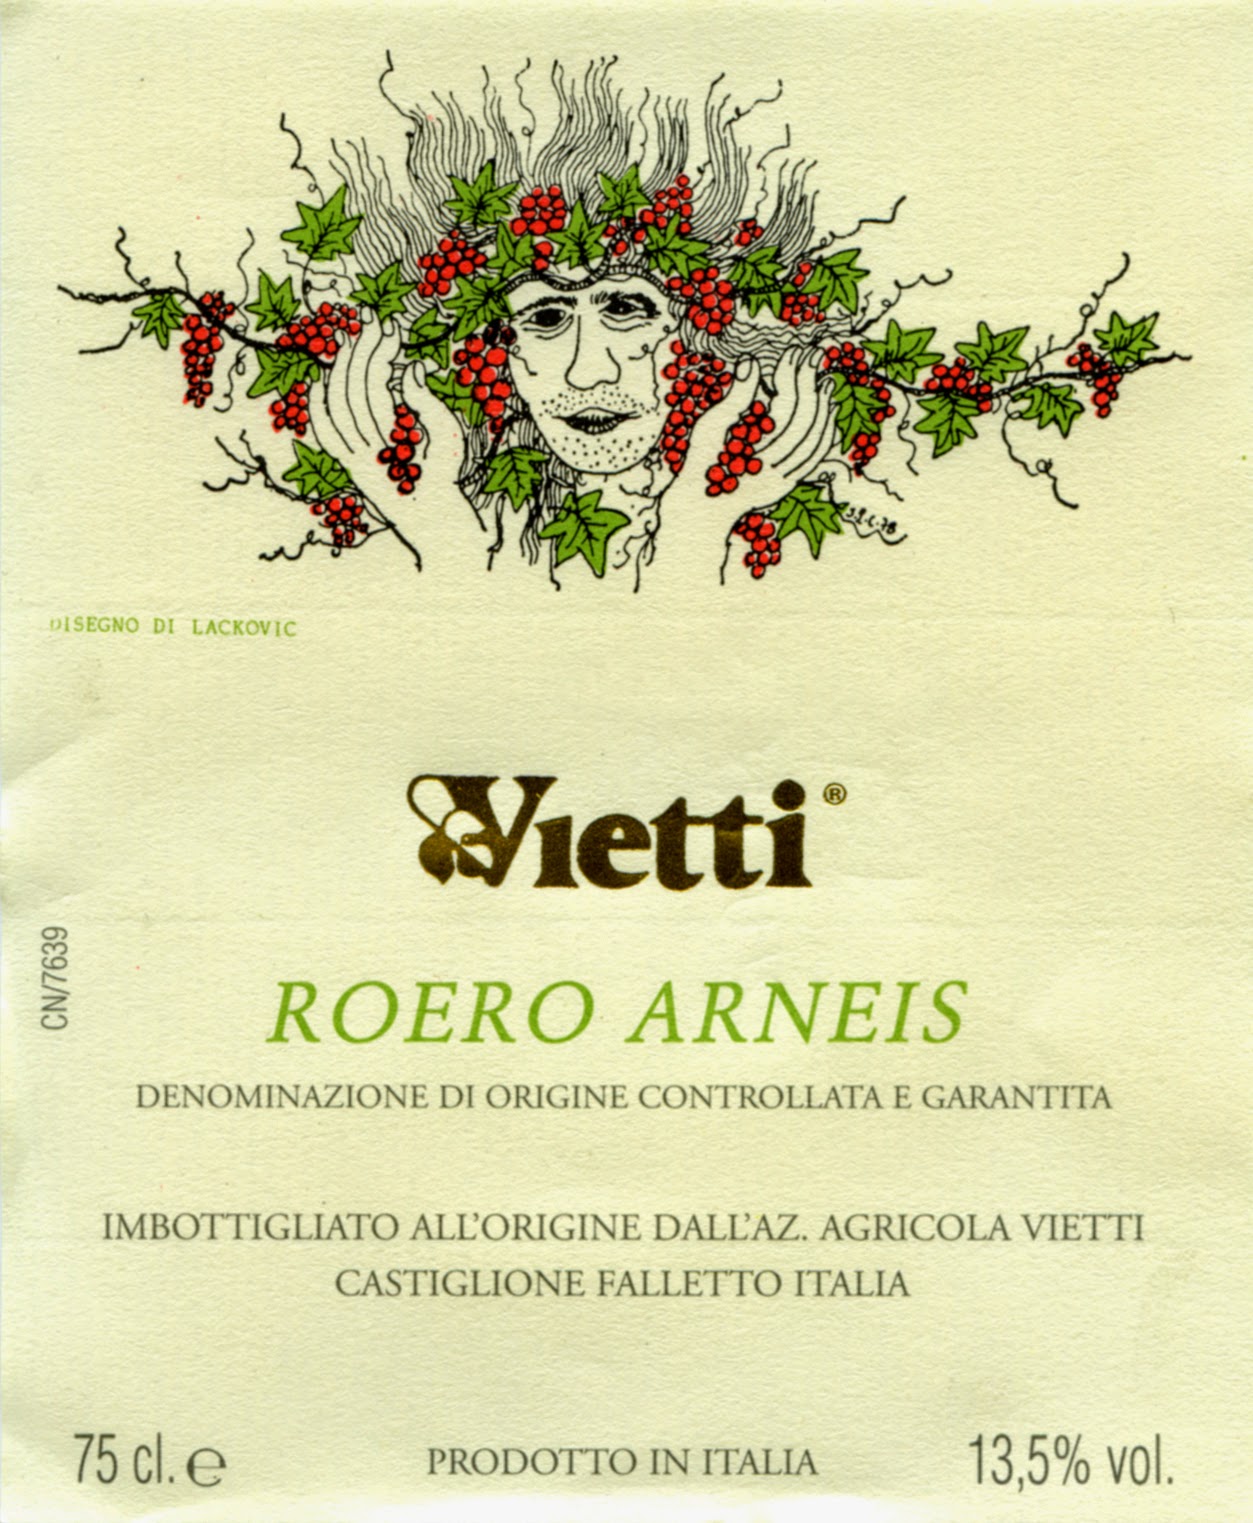 2020 Vietti Roero Arneis - click image for full description